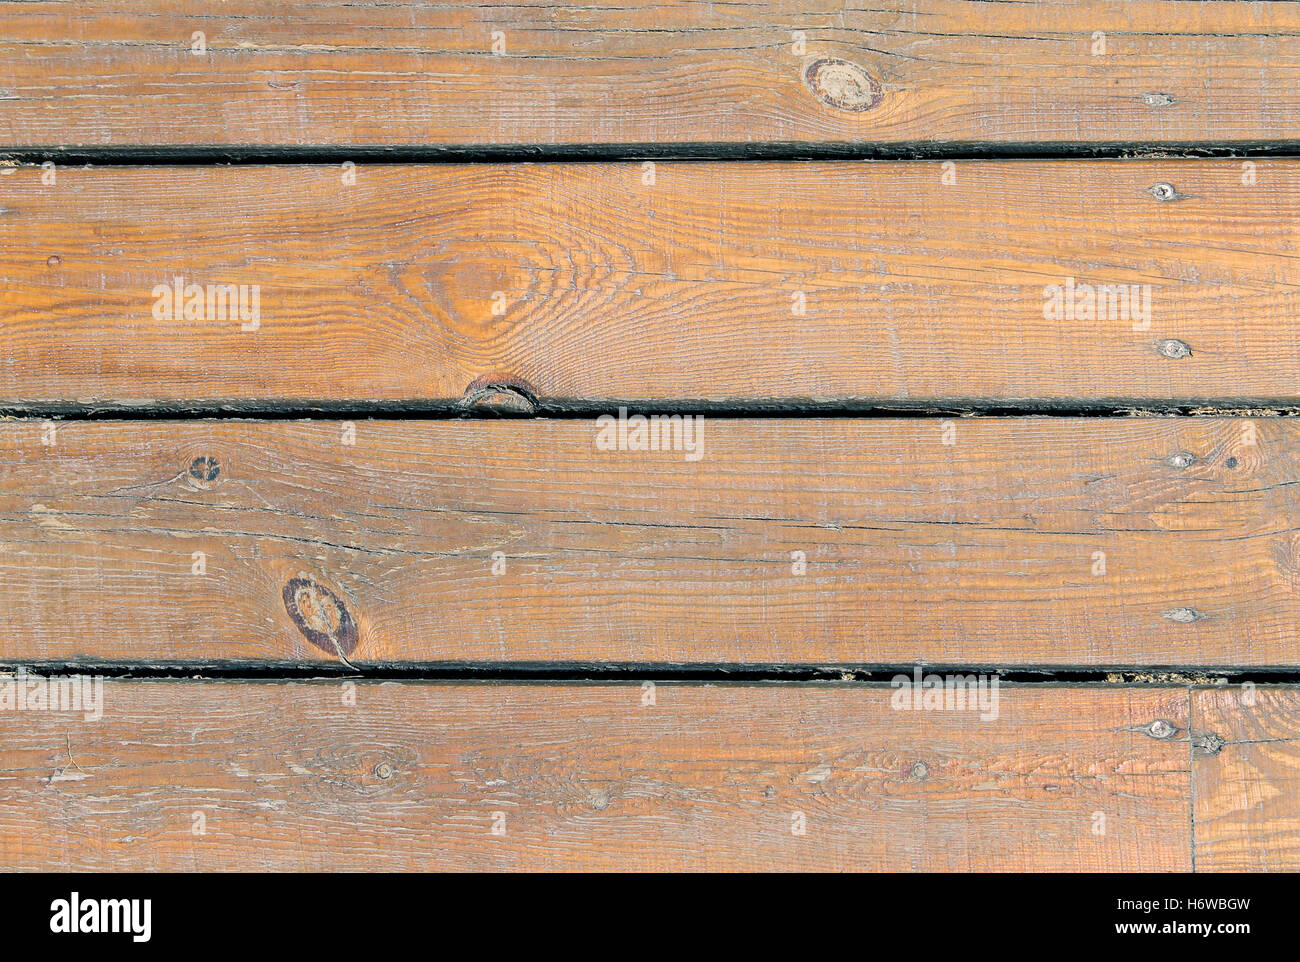 Près de la surface horizontale des bandes personne n'en bois toile fond texturé inégal grains textures granuleuses flooring Banque D'Images